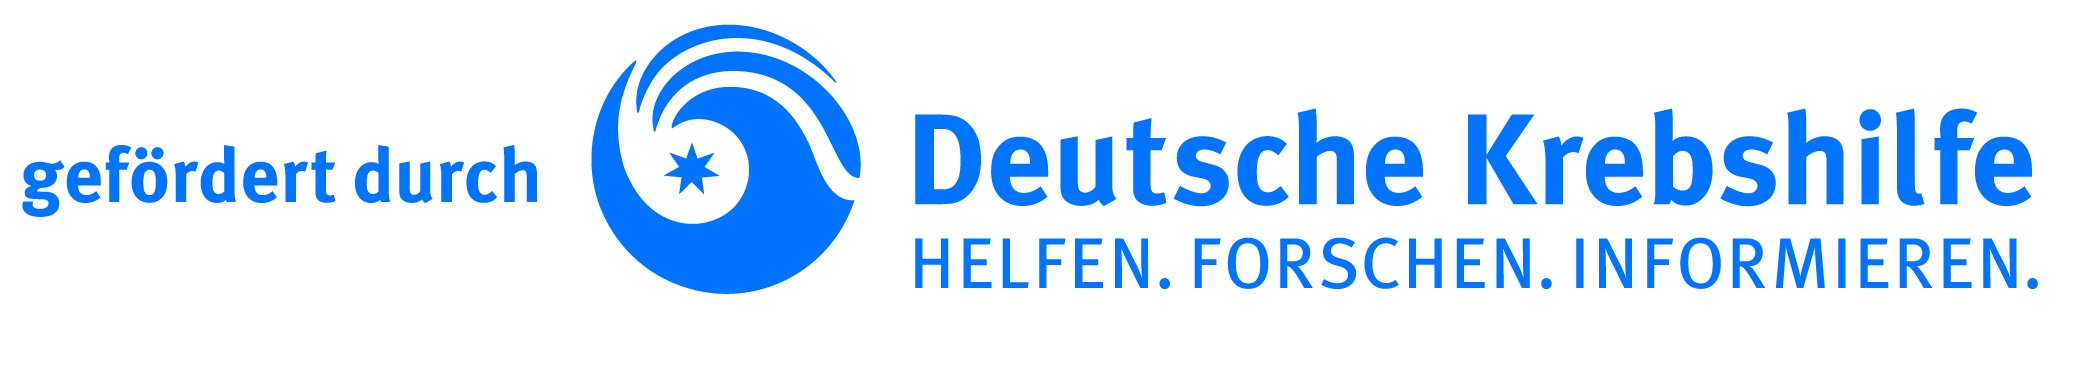 Deutsche Krebshilfe Logo: "gefördert durch Deutsche Krebshilfe Helfen. Forschen. Informieren.